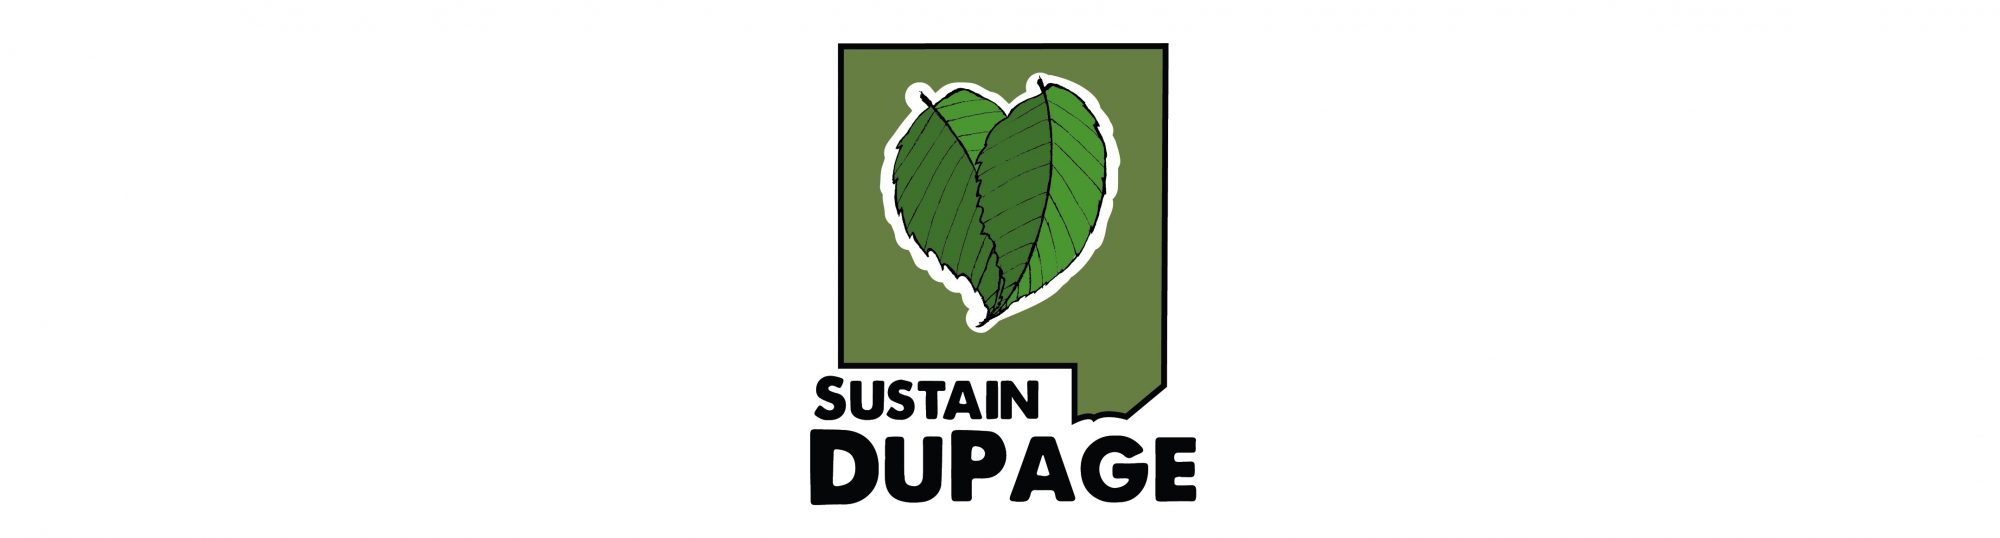 sustain dupage logo